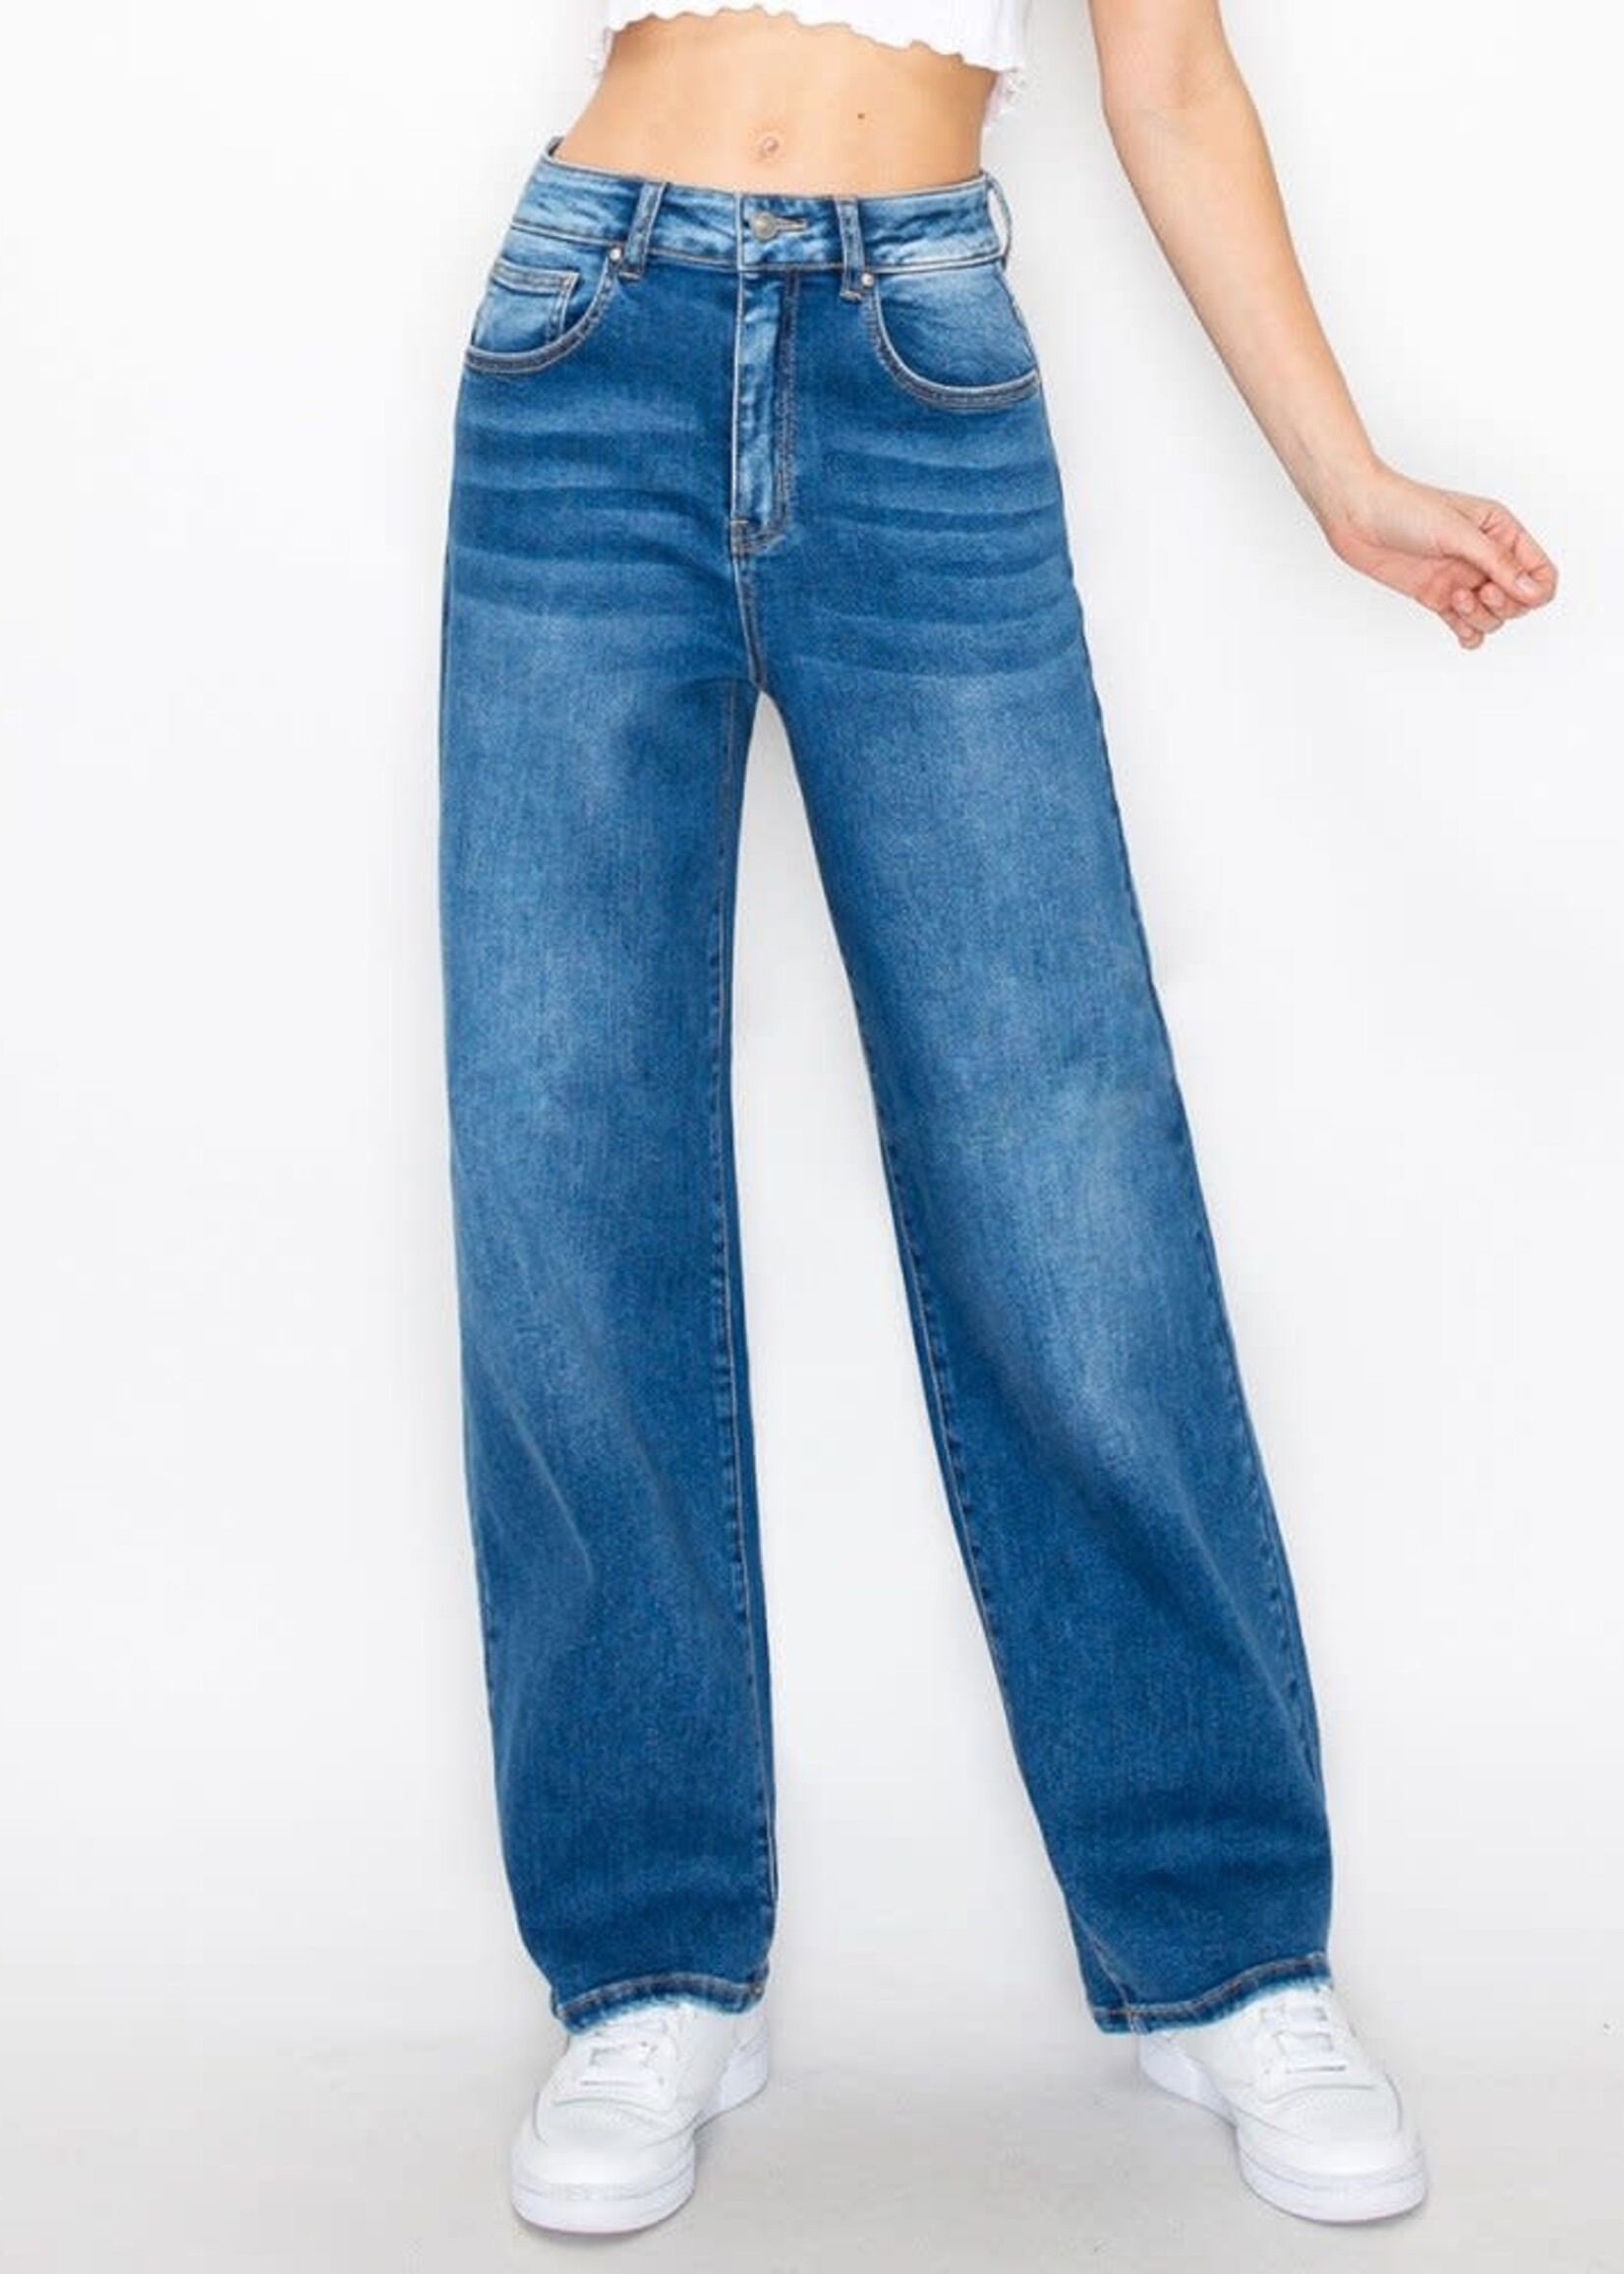 Wax Jeans Wax Jean Women's Straight Jean Pants - 90333